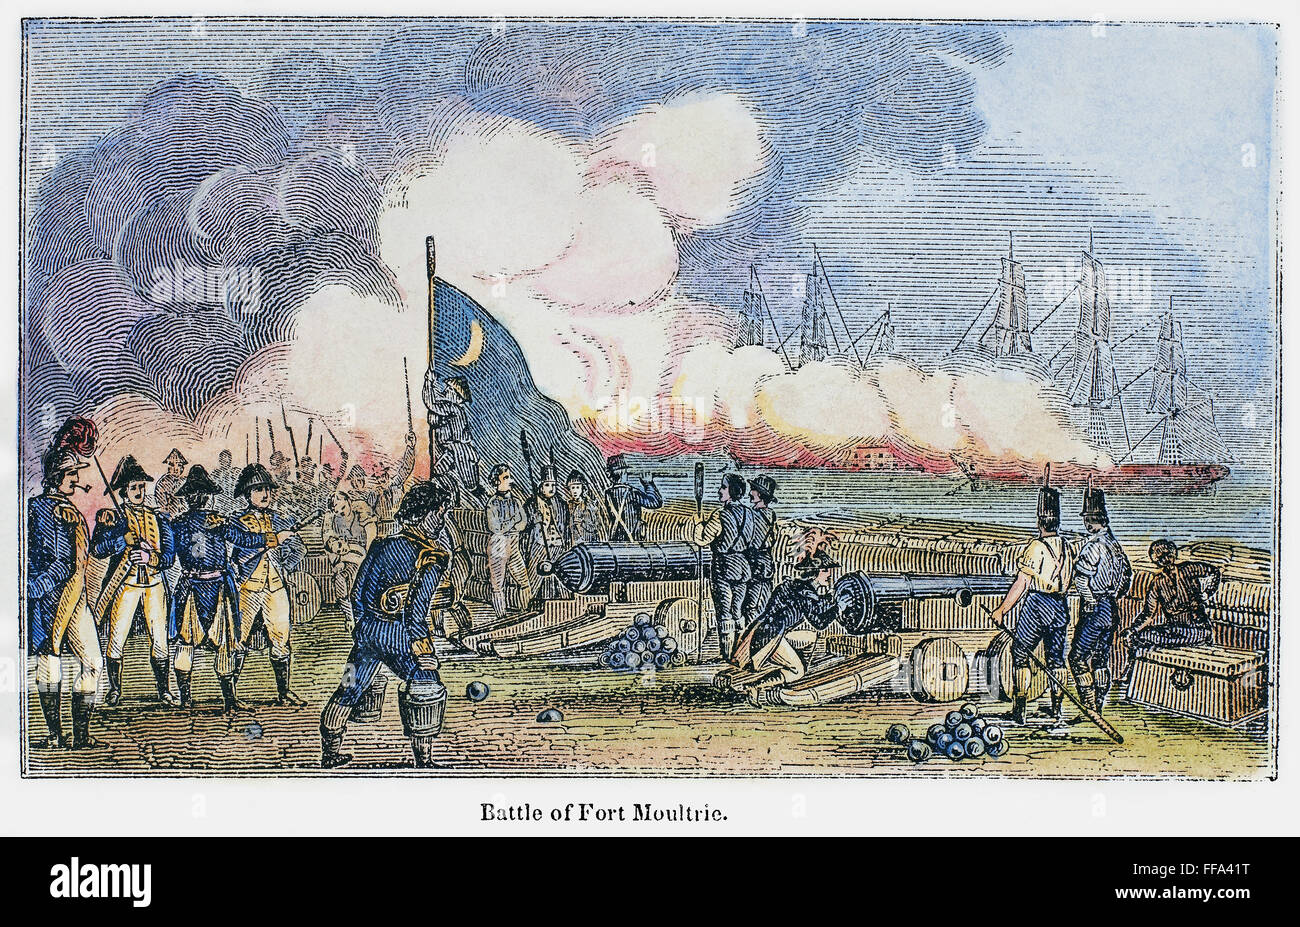 FORT MOULTRIE battaglia, 1776. /Nil pistole di Fort Moultrie su Sullivan's Island, vicino a Charleston, Carolina del Sud, la repulsione di un squadron britannico il 28 giugno 1776. Incisione su legno, americano, 1844. Foto Stock